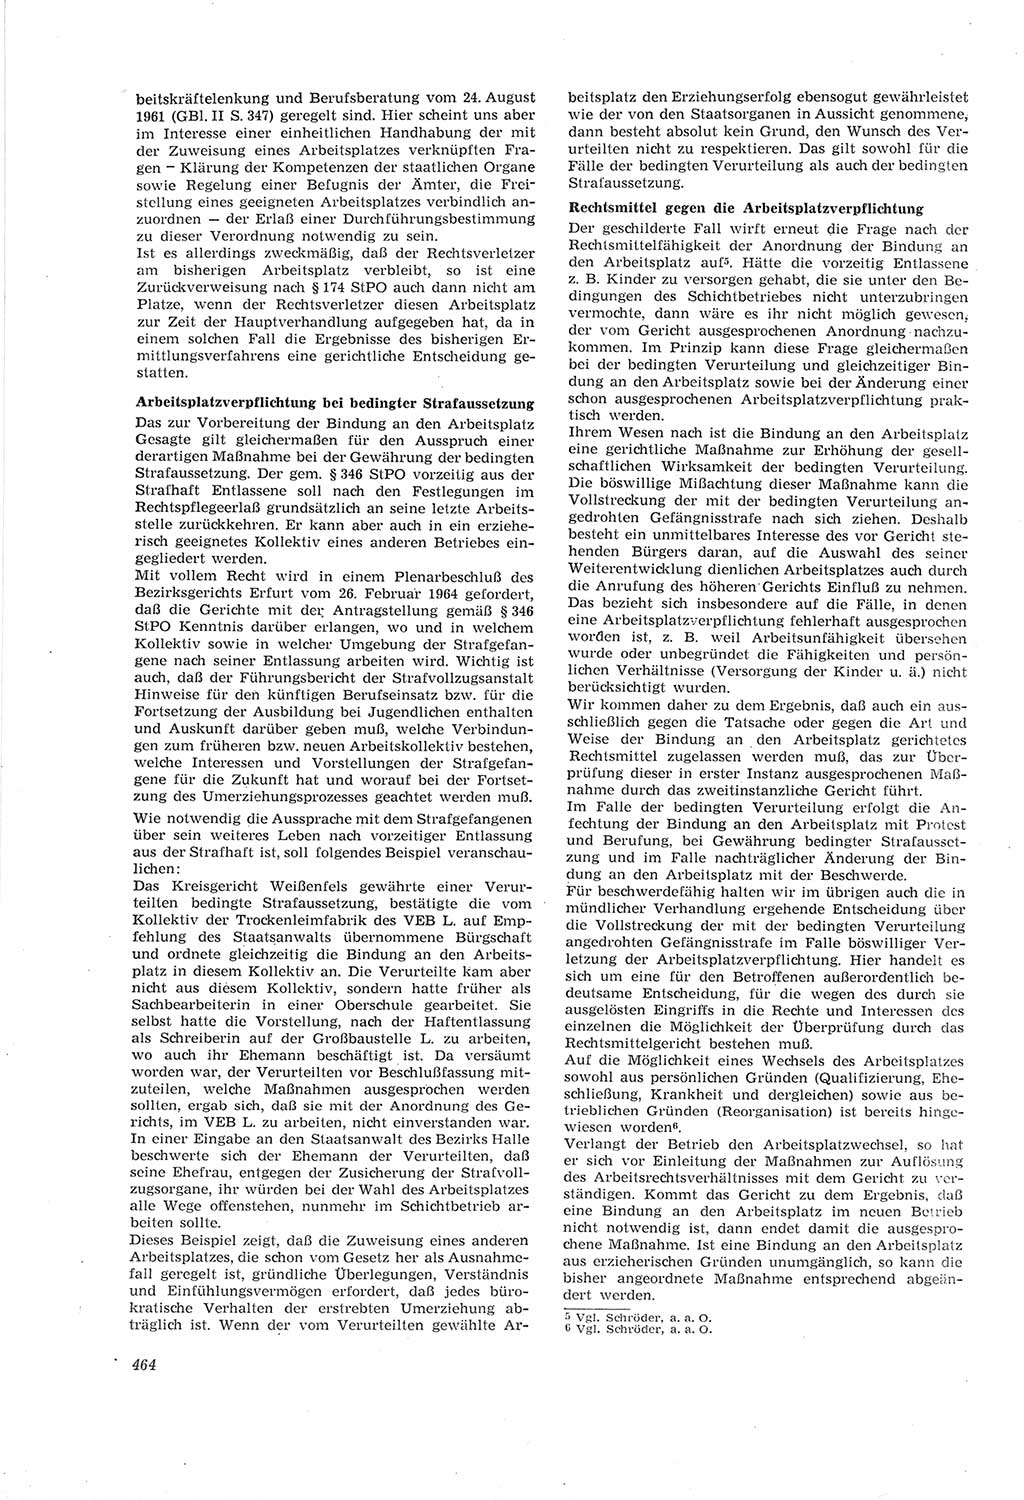 Neue Justiz (NJ), Zeitschrift für Recht und Rechtswissenschaft [Deutsche Demokratische Republik (DDR)], 18. Jahrgang 1964, Seite 464 (NJ DDR 1964, S. 464)